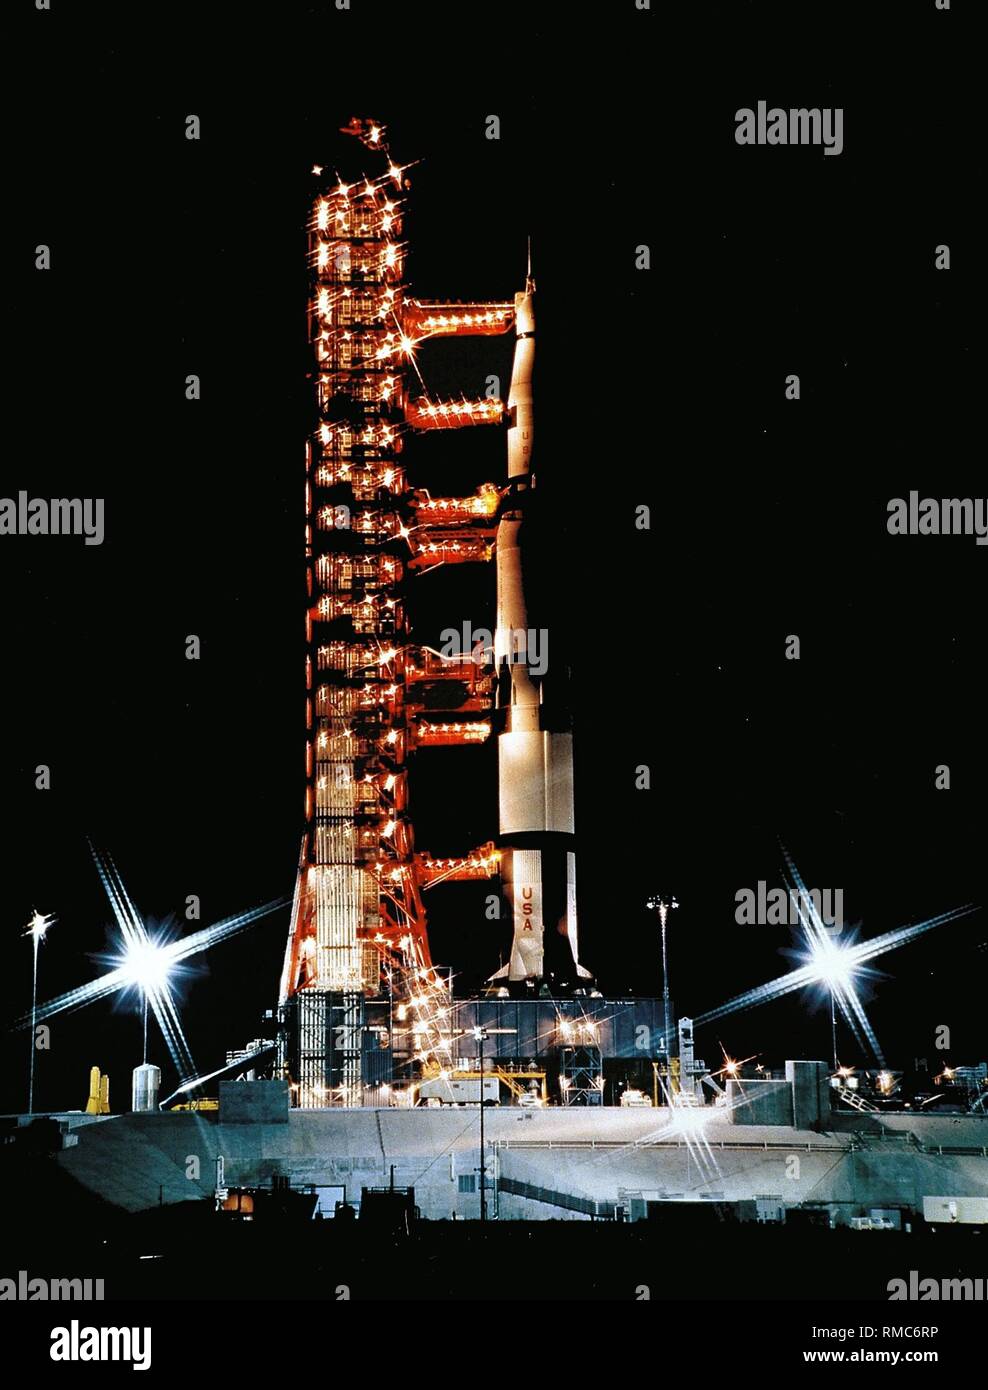 Les préparatifs pour le lancement d'une soirée du programme Apollo au Centre spatial Kennedy. La propulsion de fusée du programme Apollo, la Saturn V, et l'appareil sont mis en position à l'aire de lancement. Photo non datée, probablement à partir des années 1980. Banque D'Images